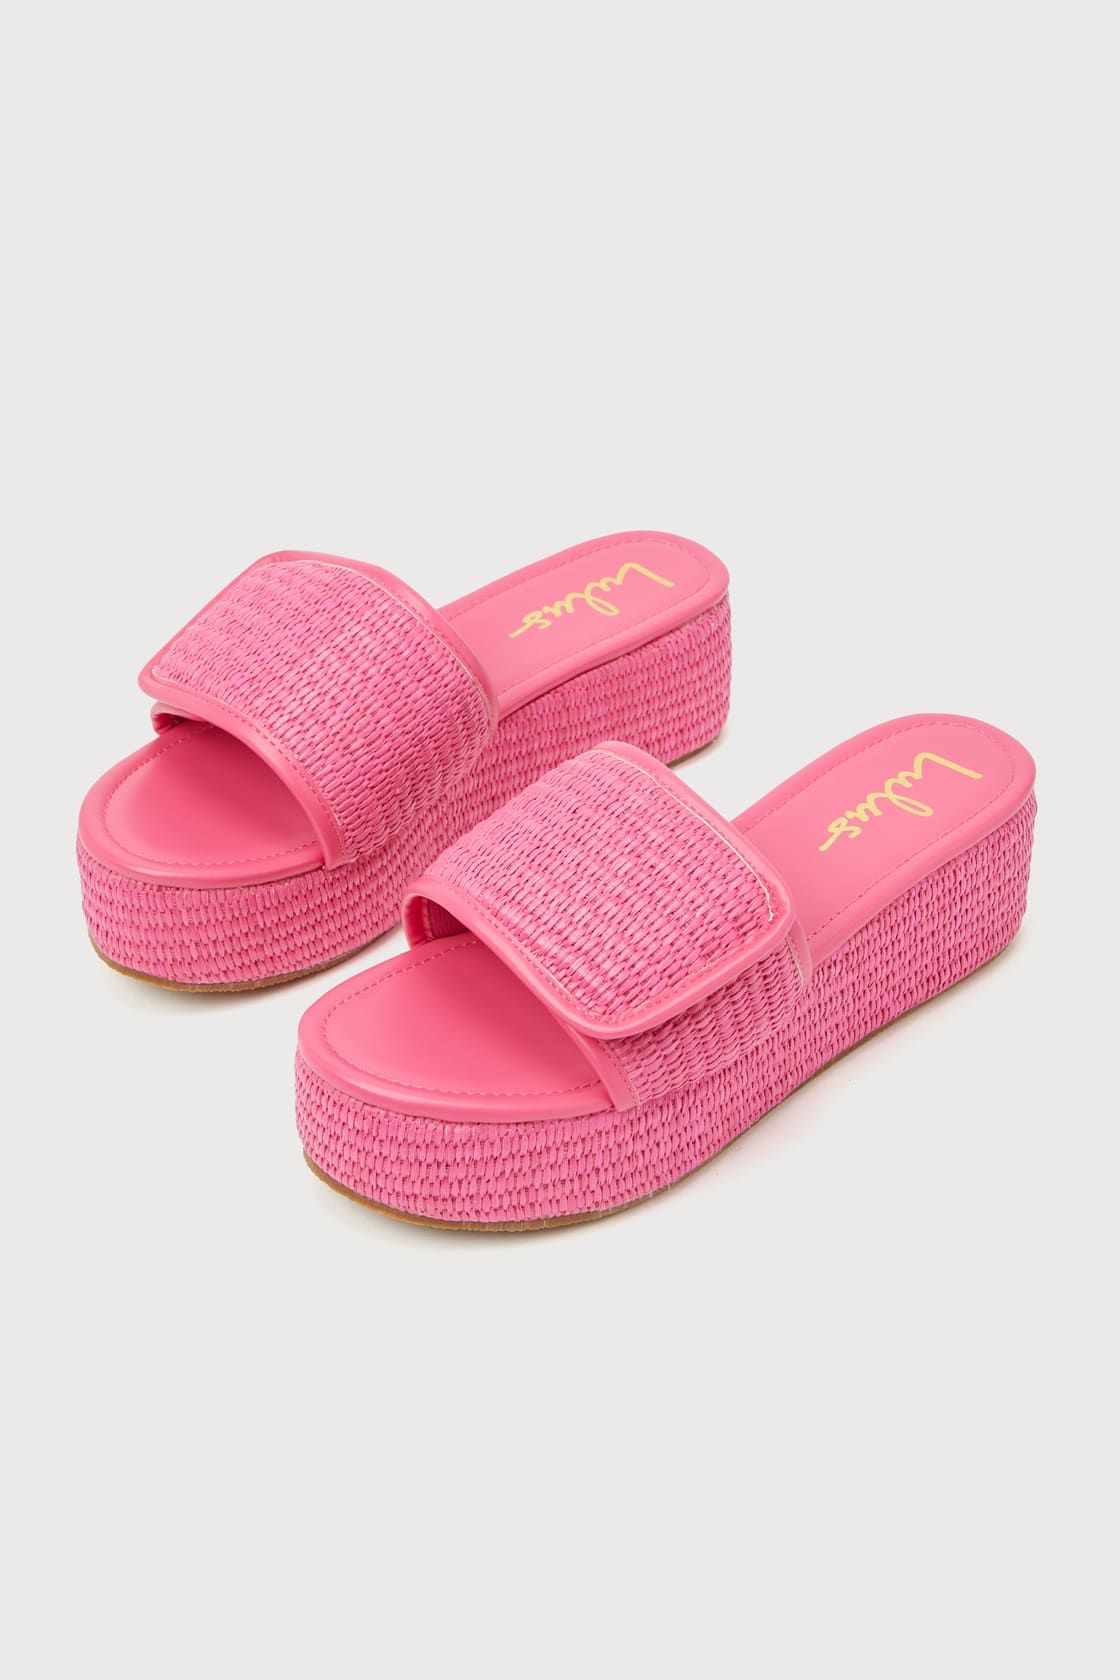 Evolet Pink Raffia Platform Slide Sandals | Lulus